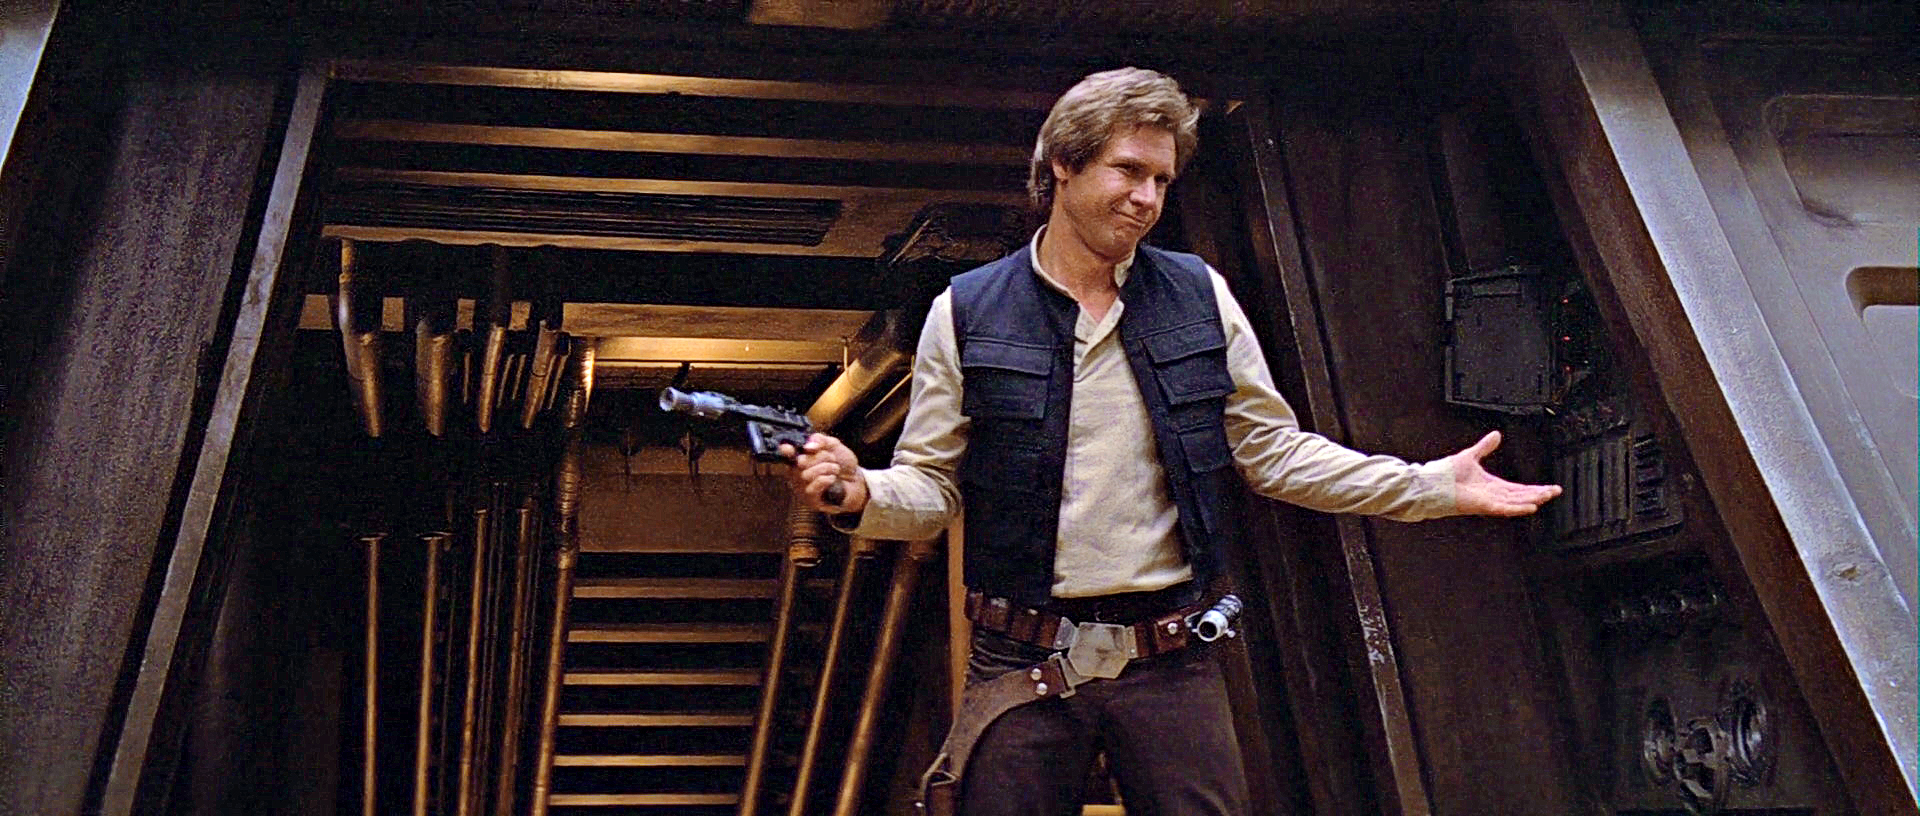 Han Solo - Return of the Jedi